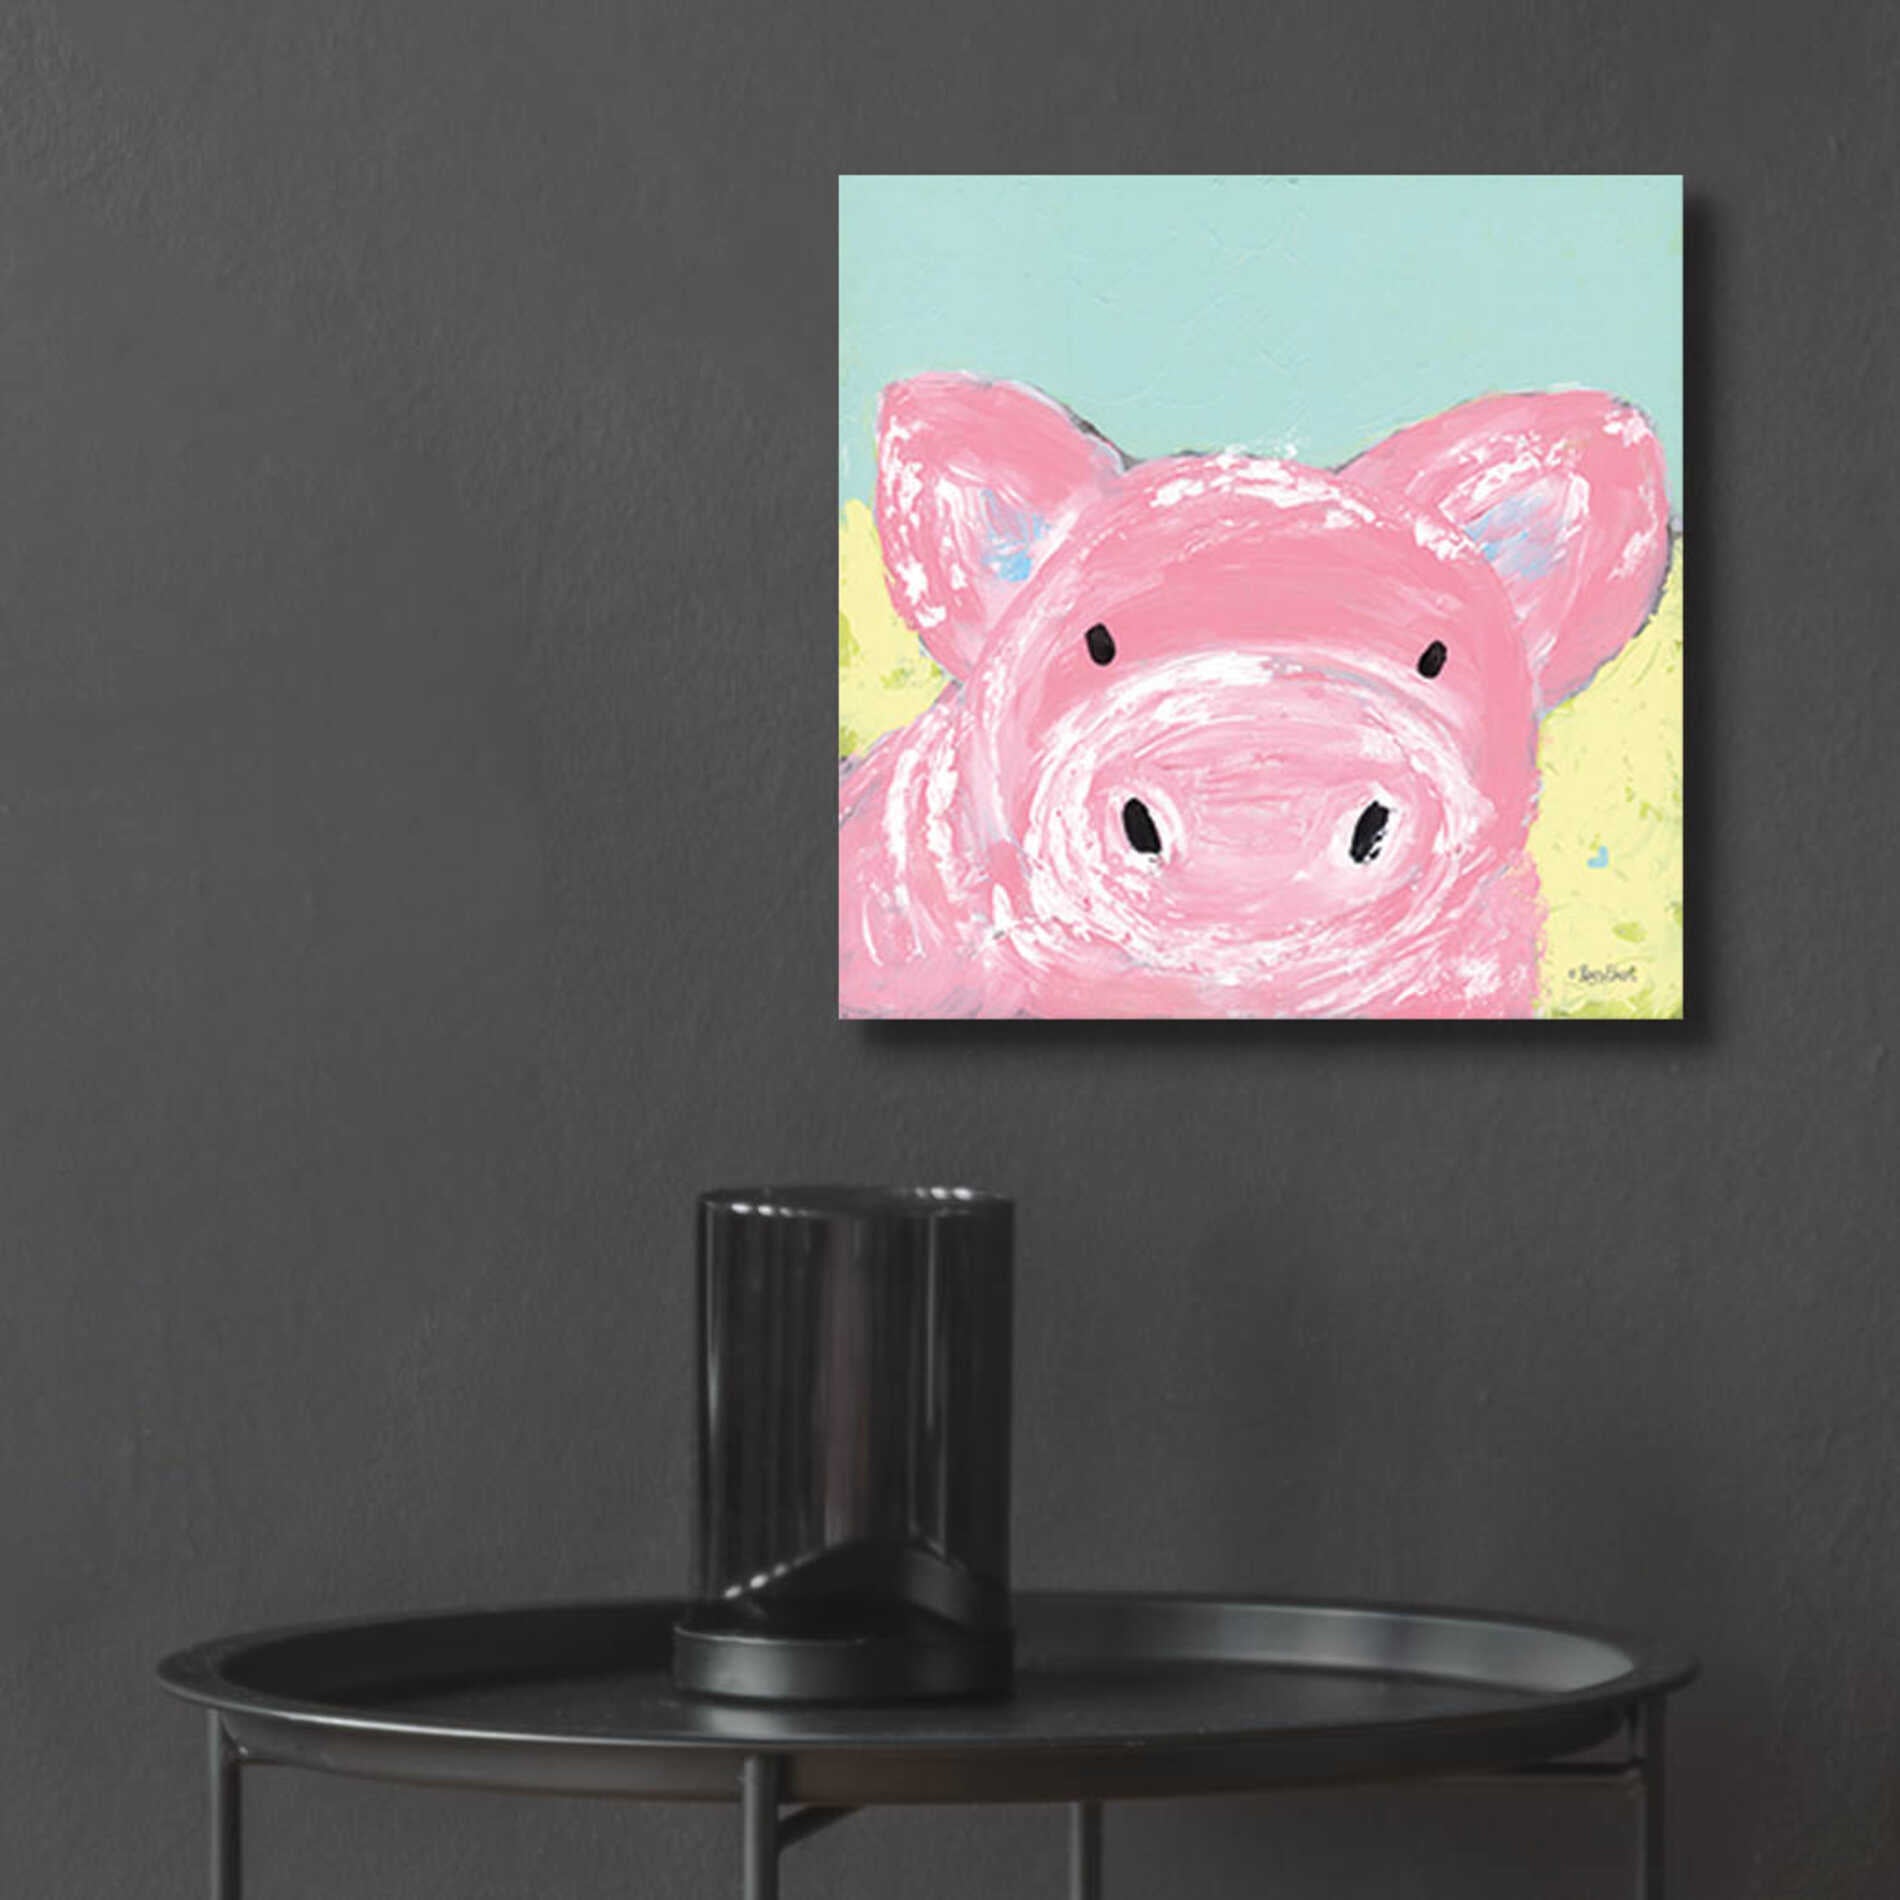 Epic Art 'Oink' by Roey Ebert, Acrylic Glass Wall Art,12x12